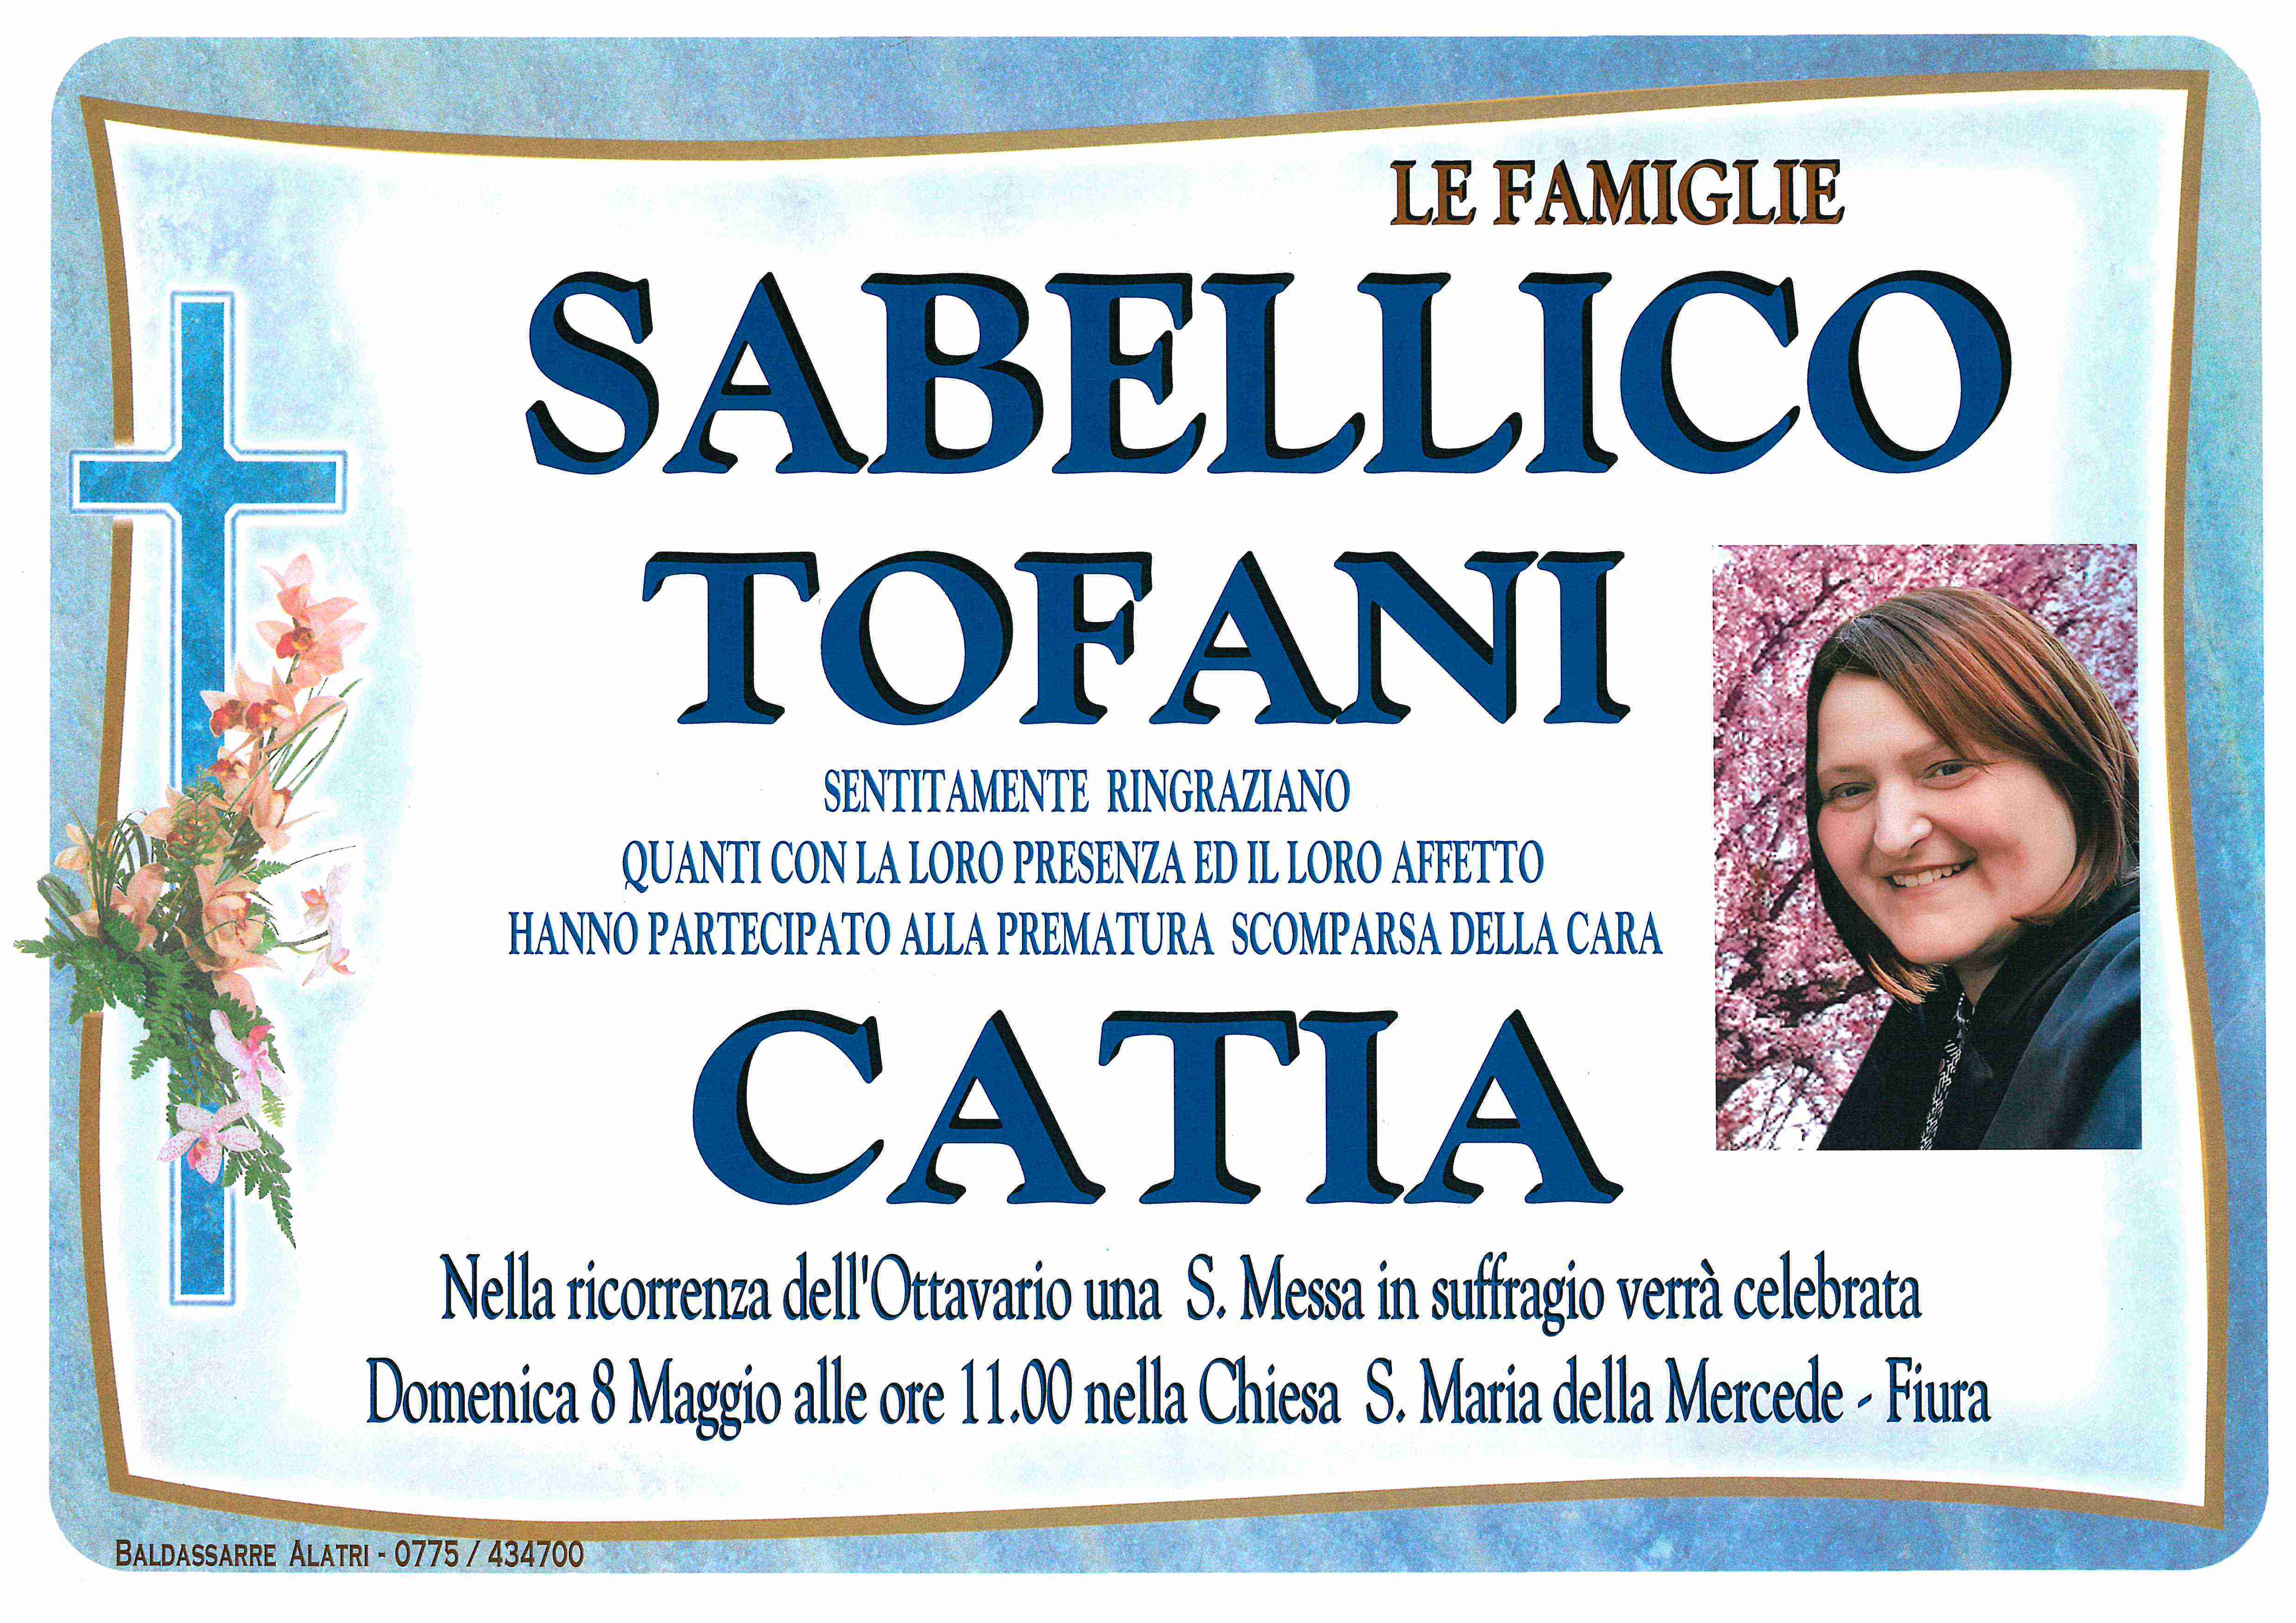 Catia Sabellico